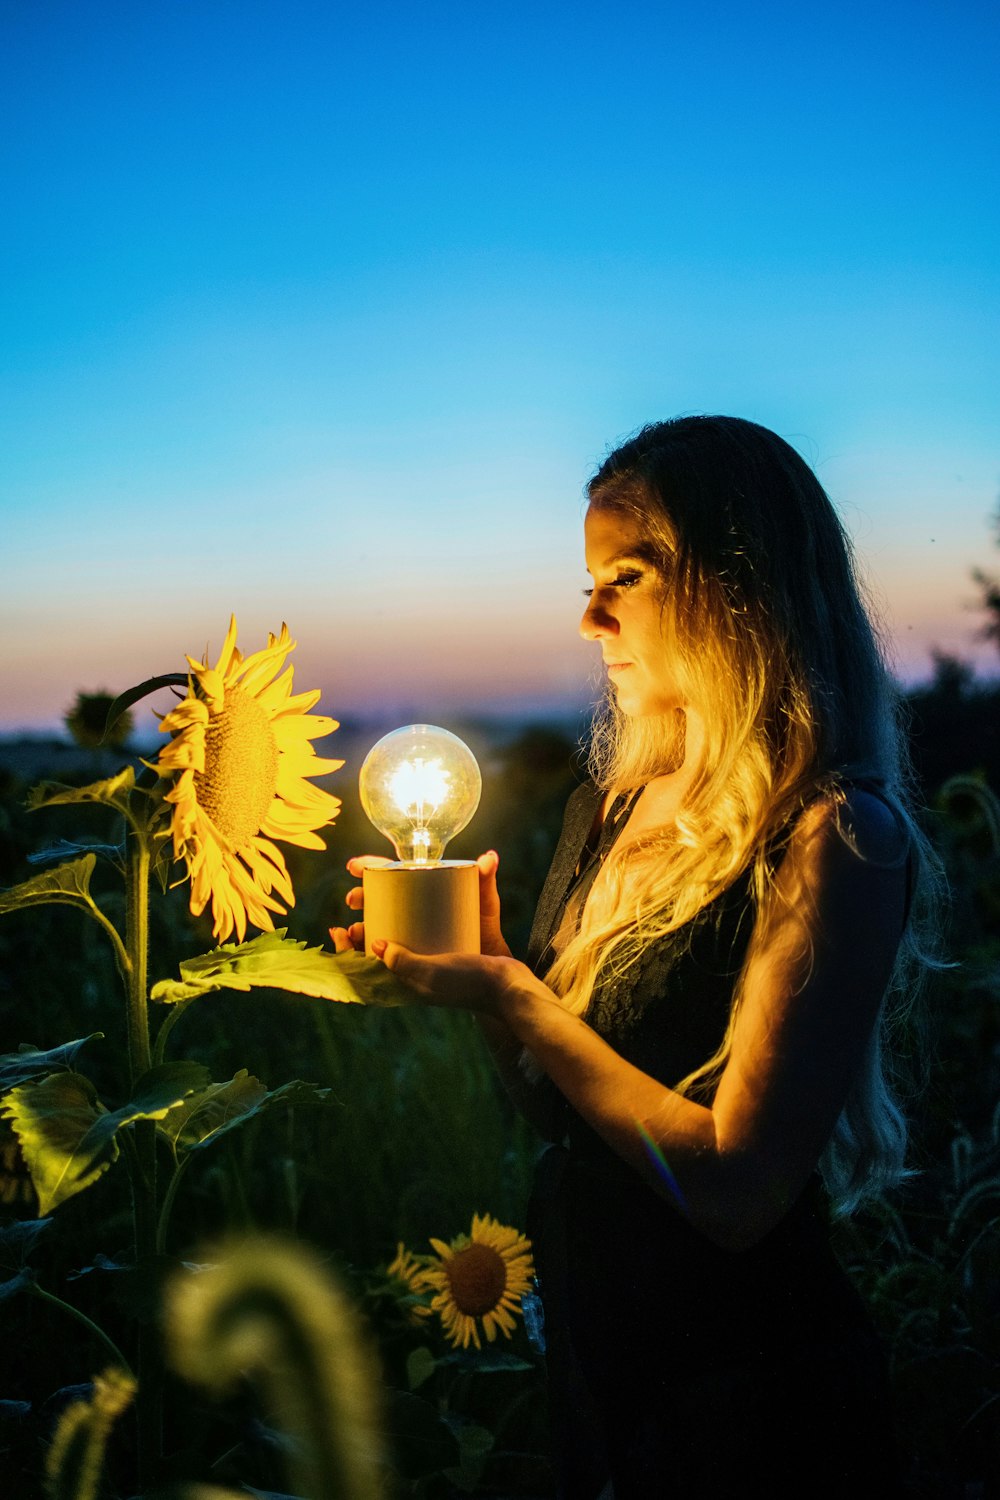 woman holding light bulb near sunflower taken during sunset